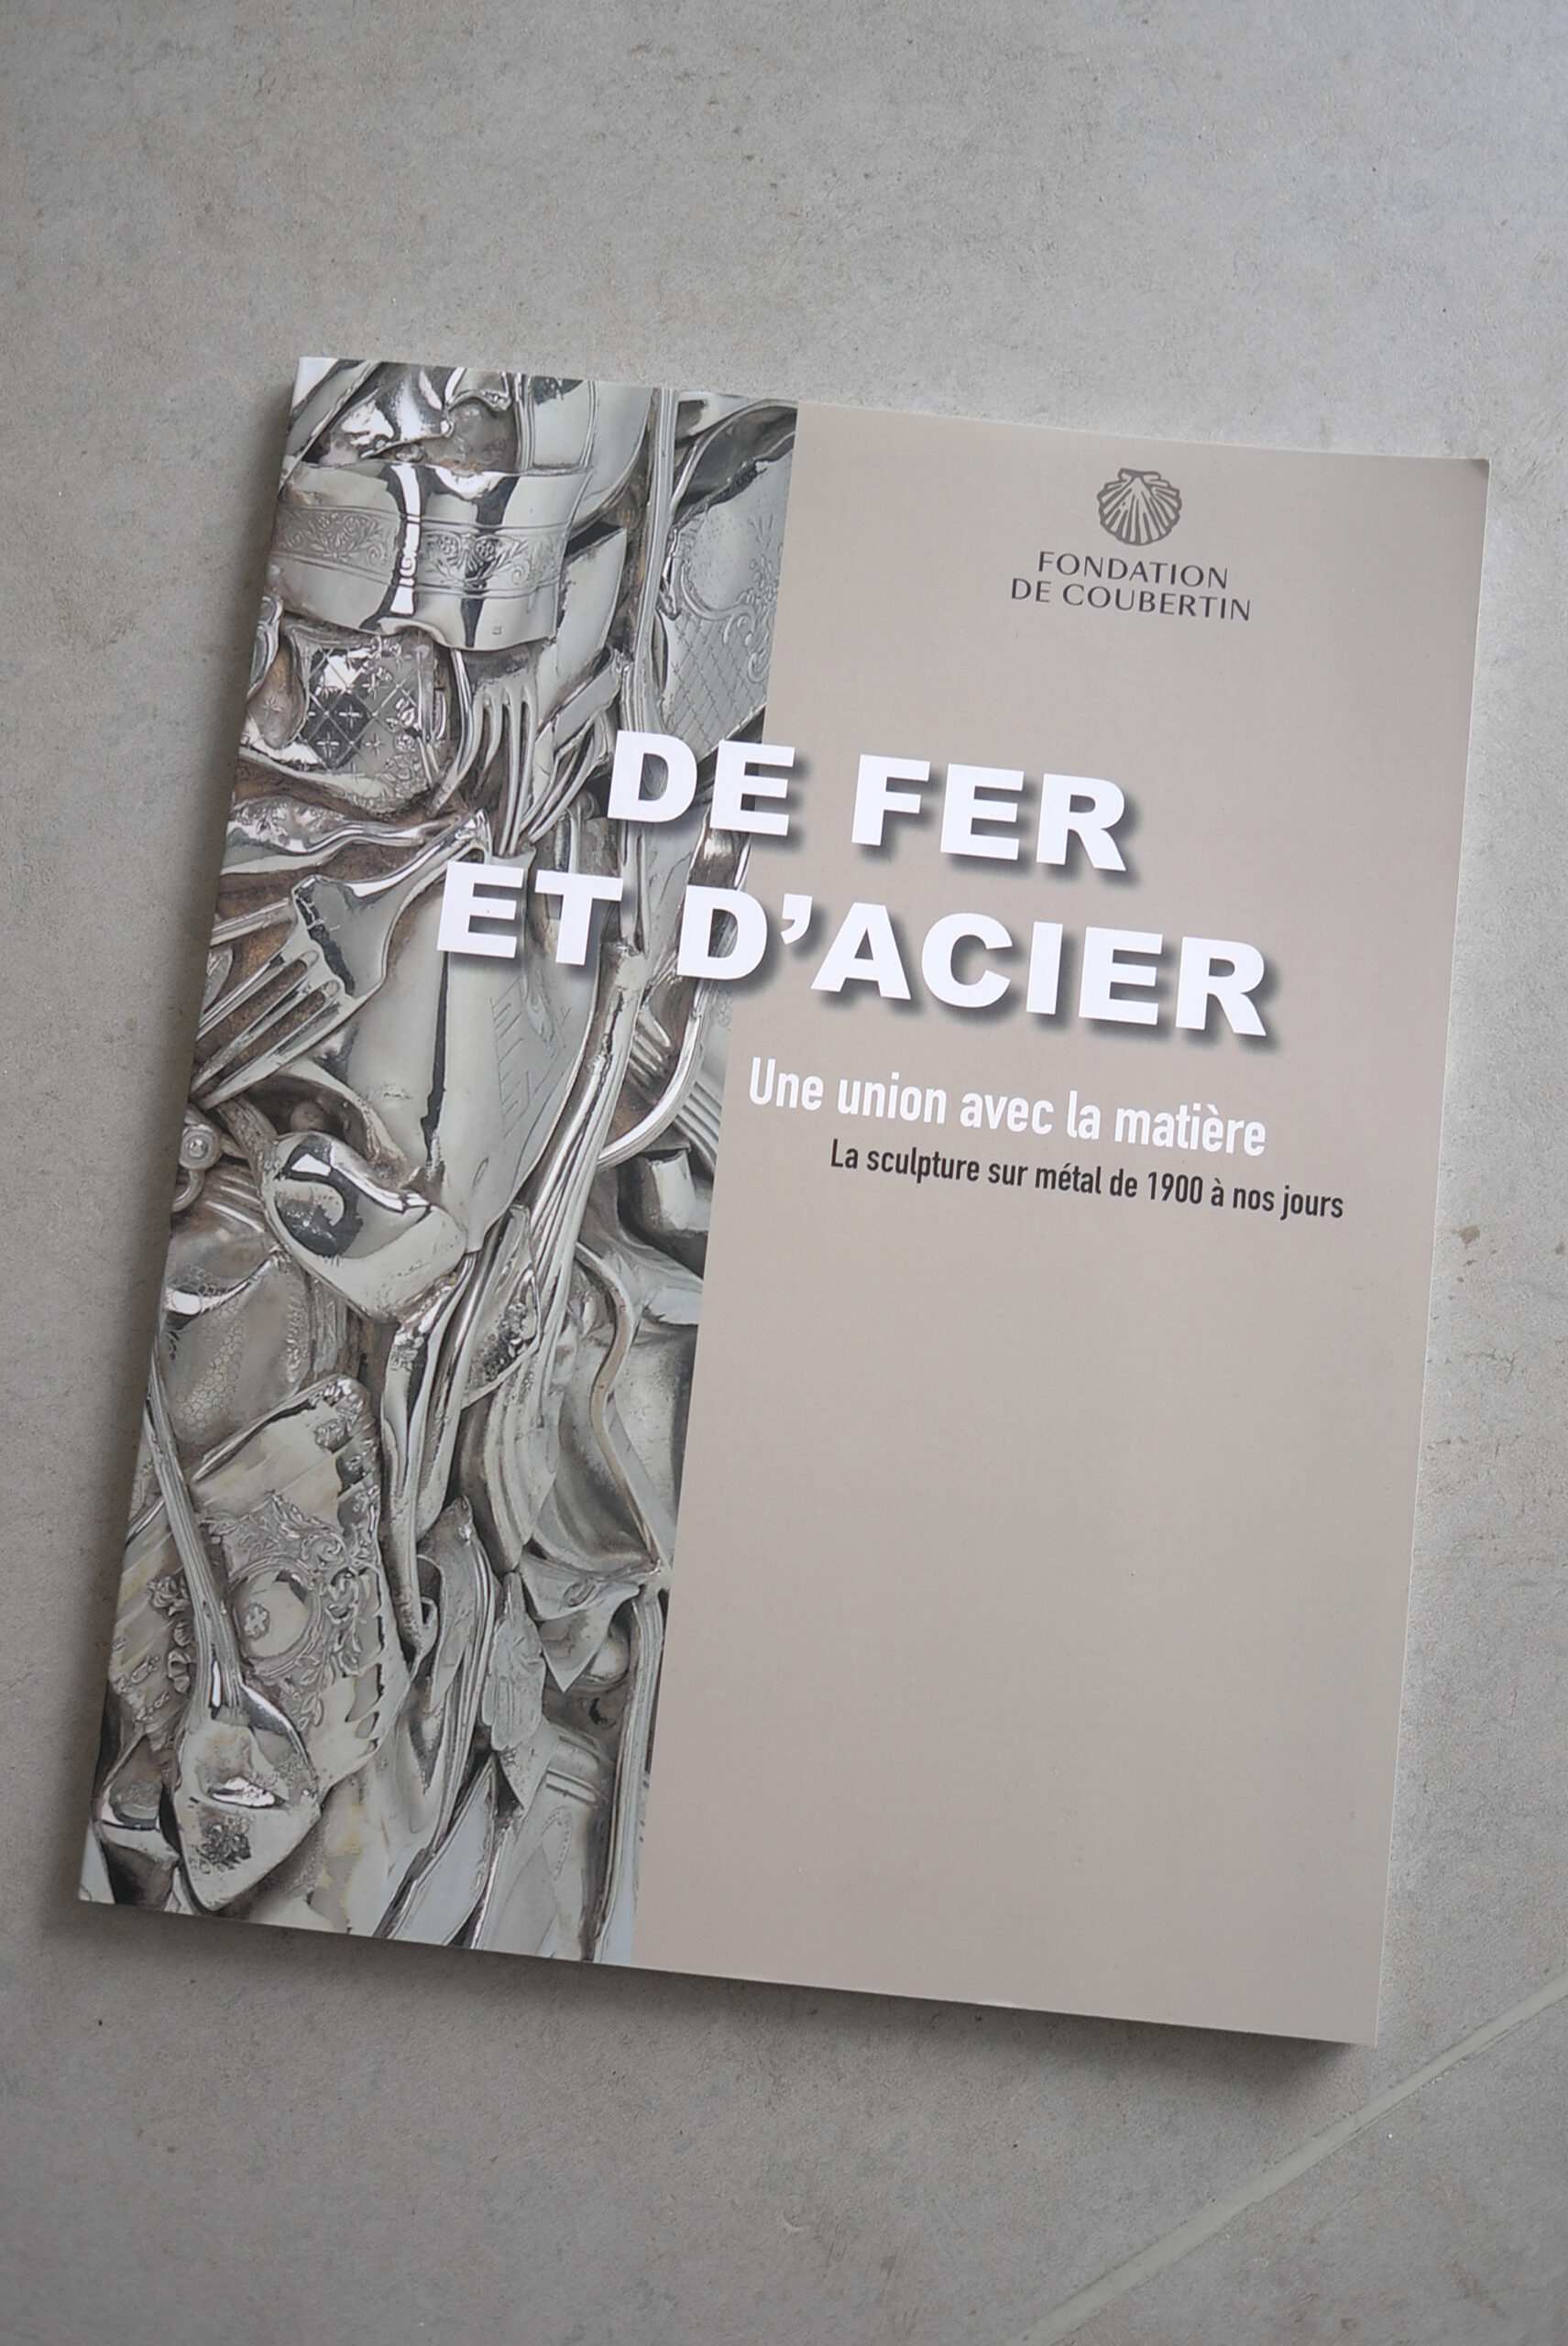 Catalogue de l&rsquo;exposition de « de fer et d&rsquo;acier »du Musée de la Fondation de Coubertin,2021.